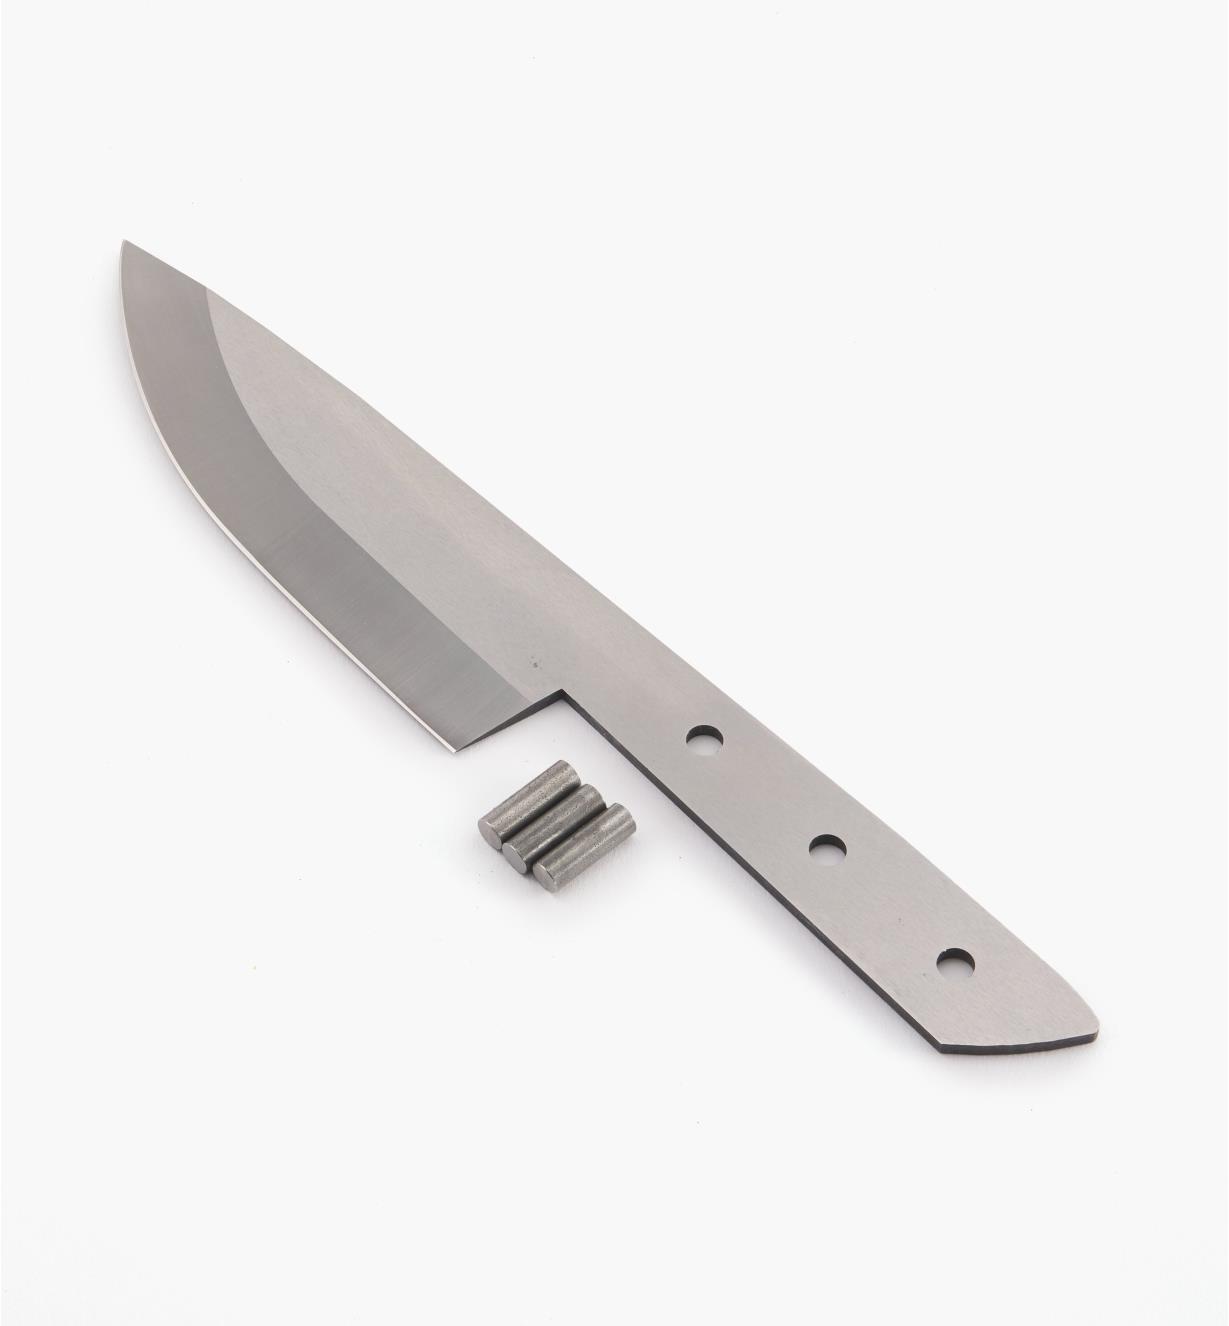 19P2451 - 1/8" × 5" Chef's Knife Kit